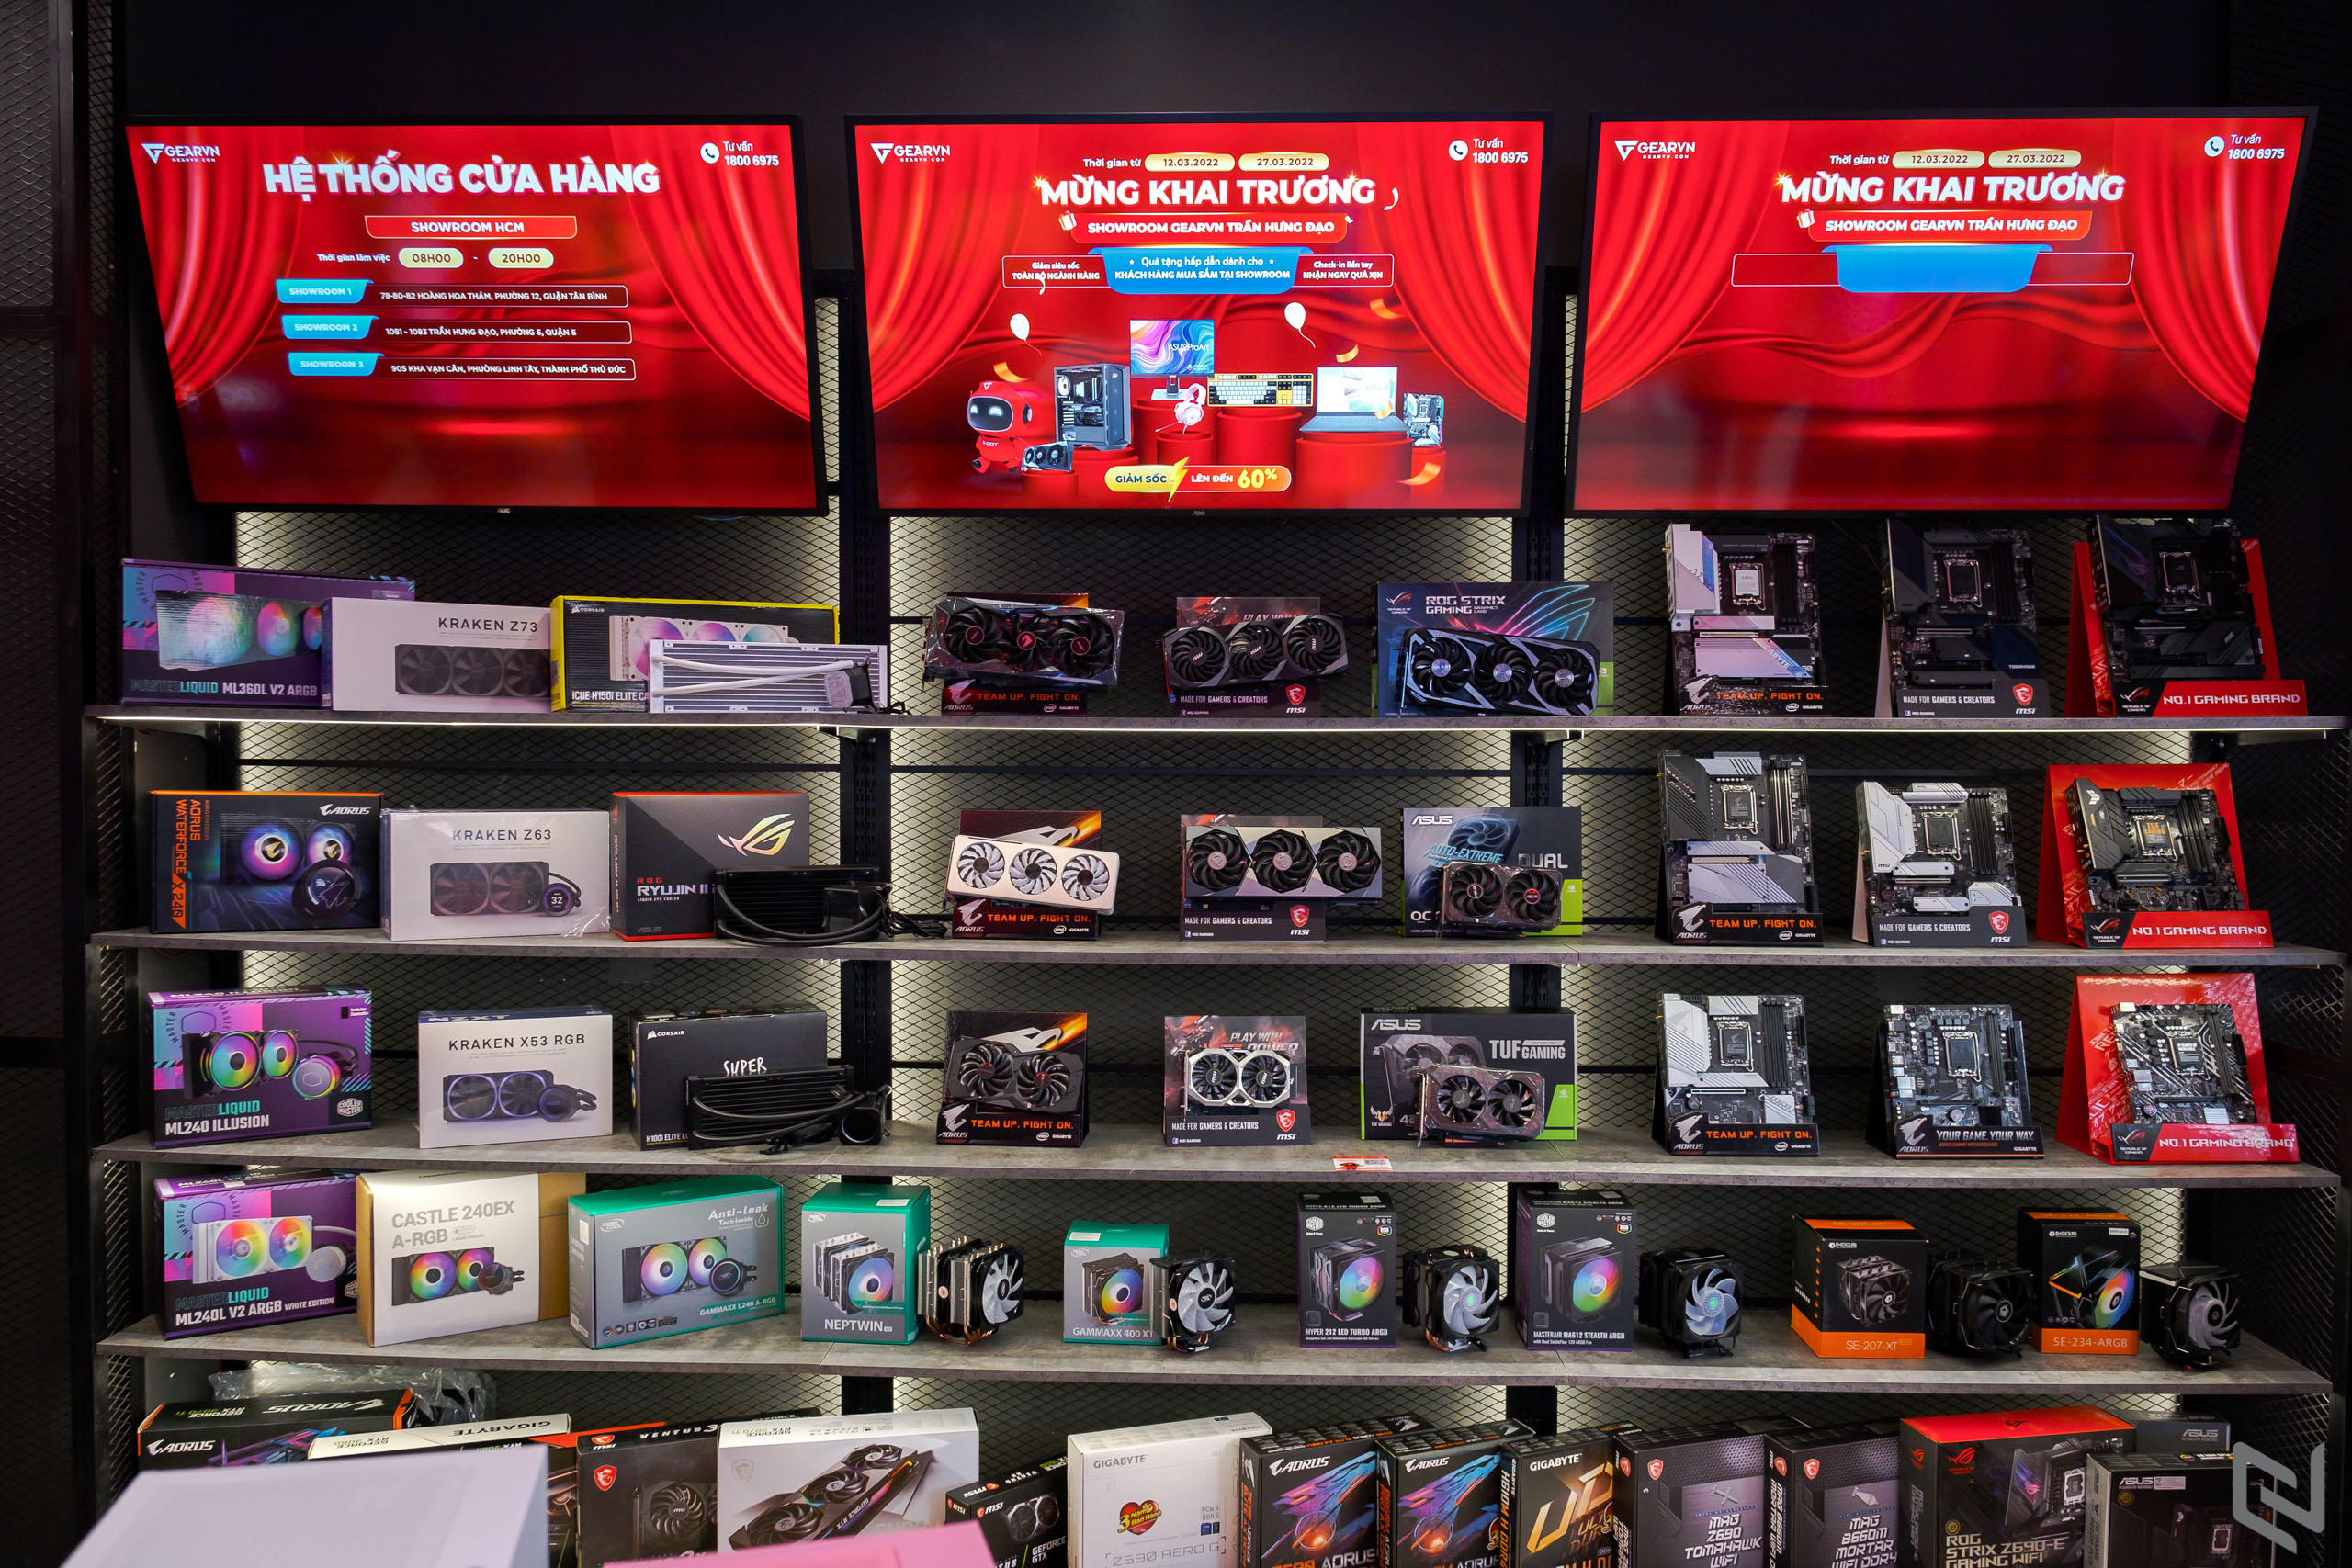 Showroom GearVN Trần Hưng Đạo - Điểm mua sắm lý tưởng dành cho cộng đồng game thủ giữa lòng thành phố Hồ Chí Minh